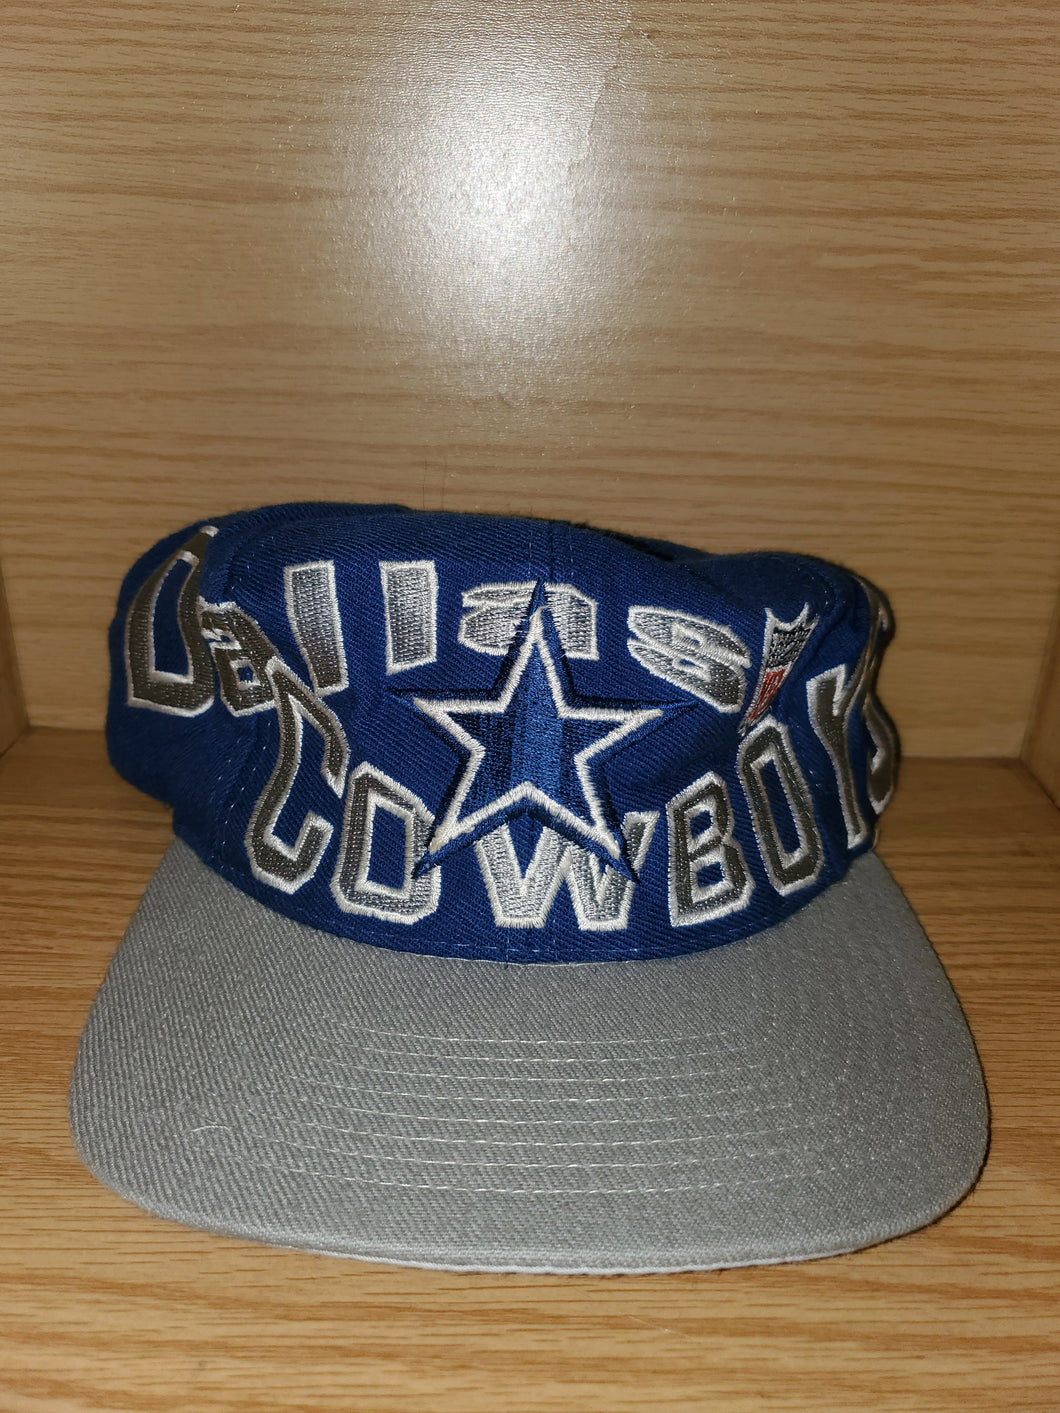 Vintage Apex Dallas Cowboys Hat